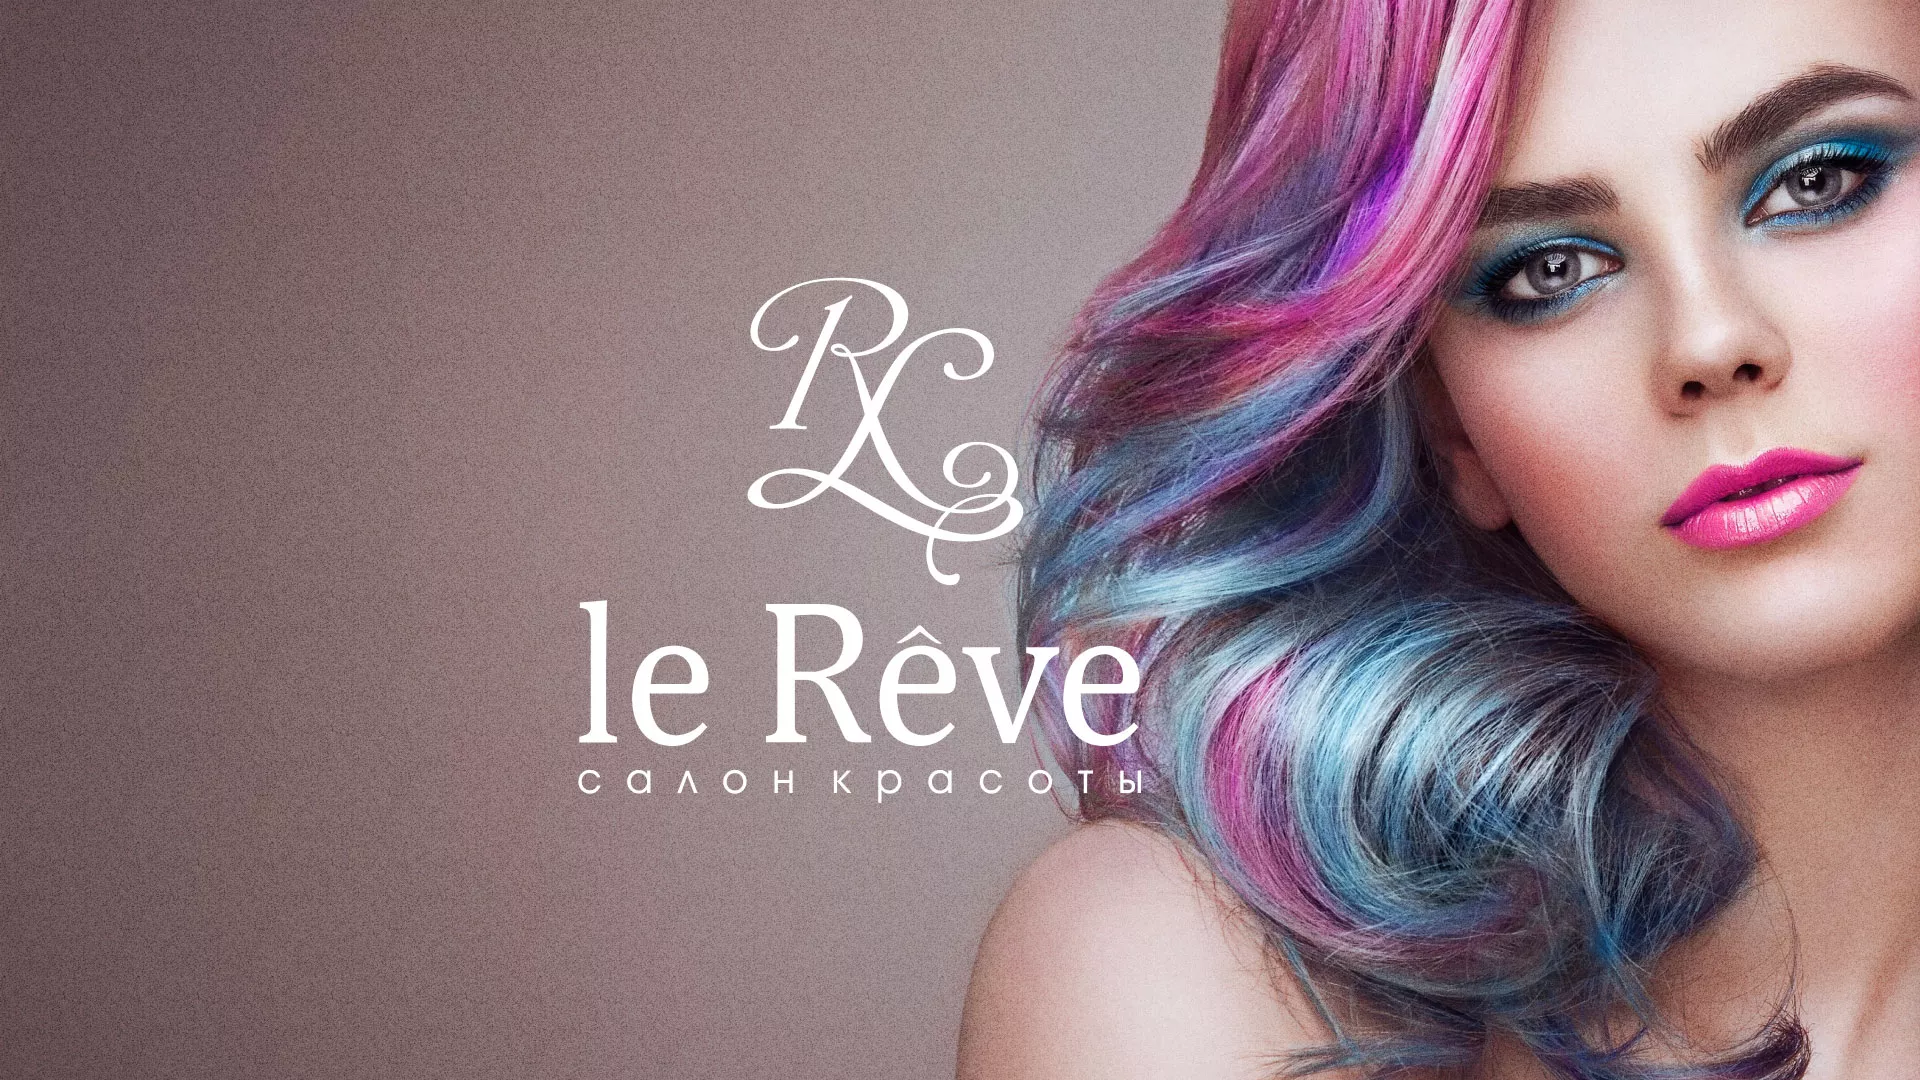 Создание сайта для салона красоты «Le Reve» в Углегорске